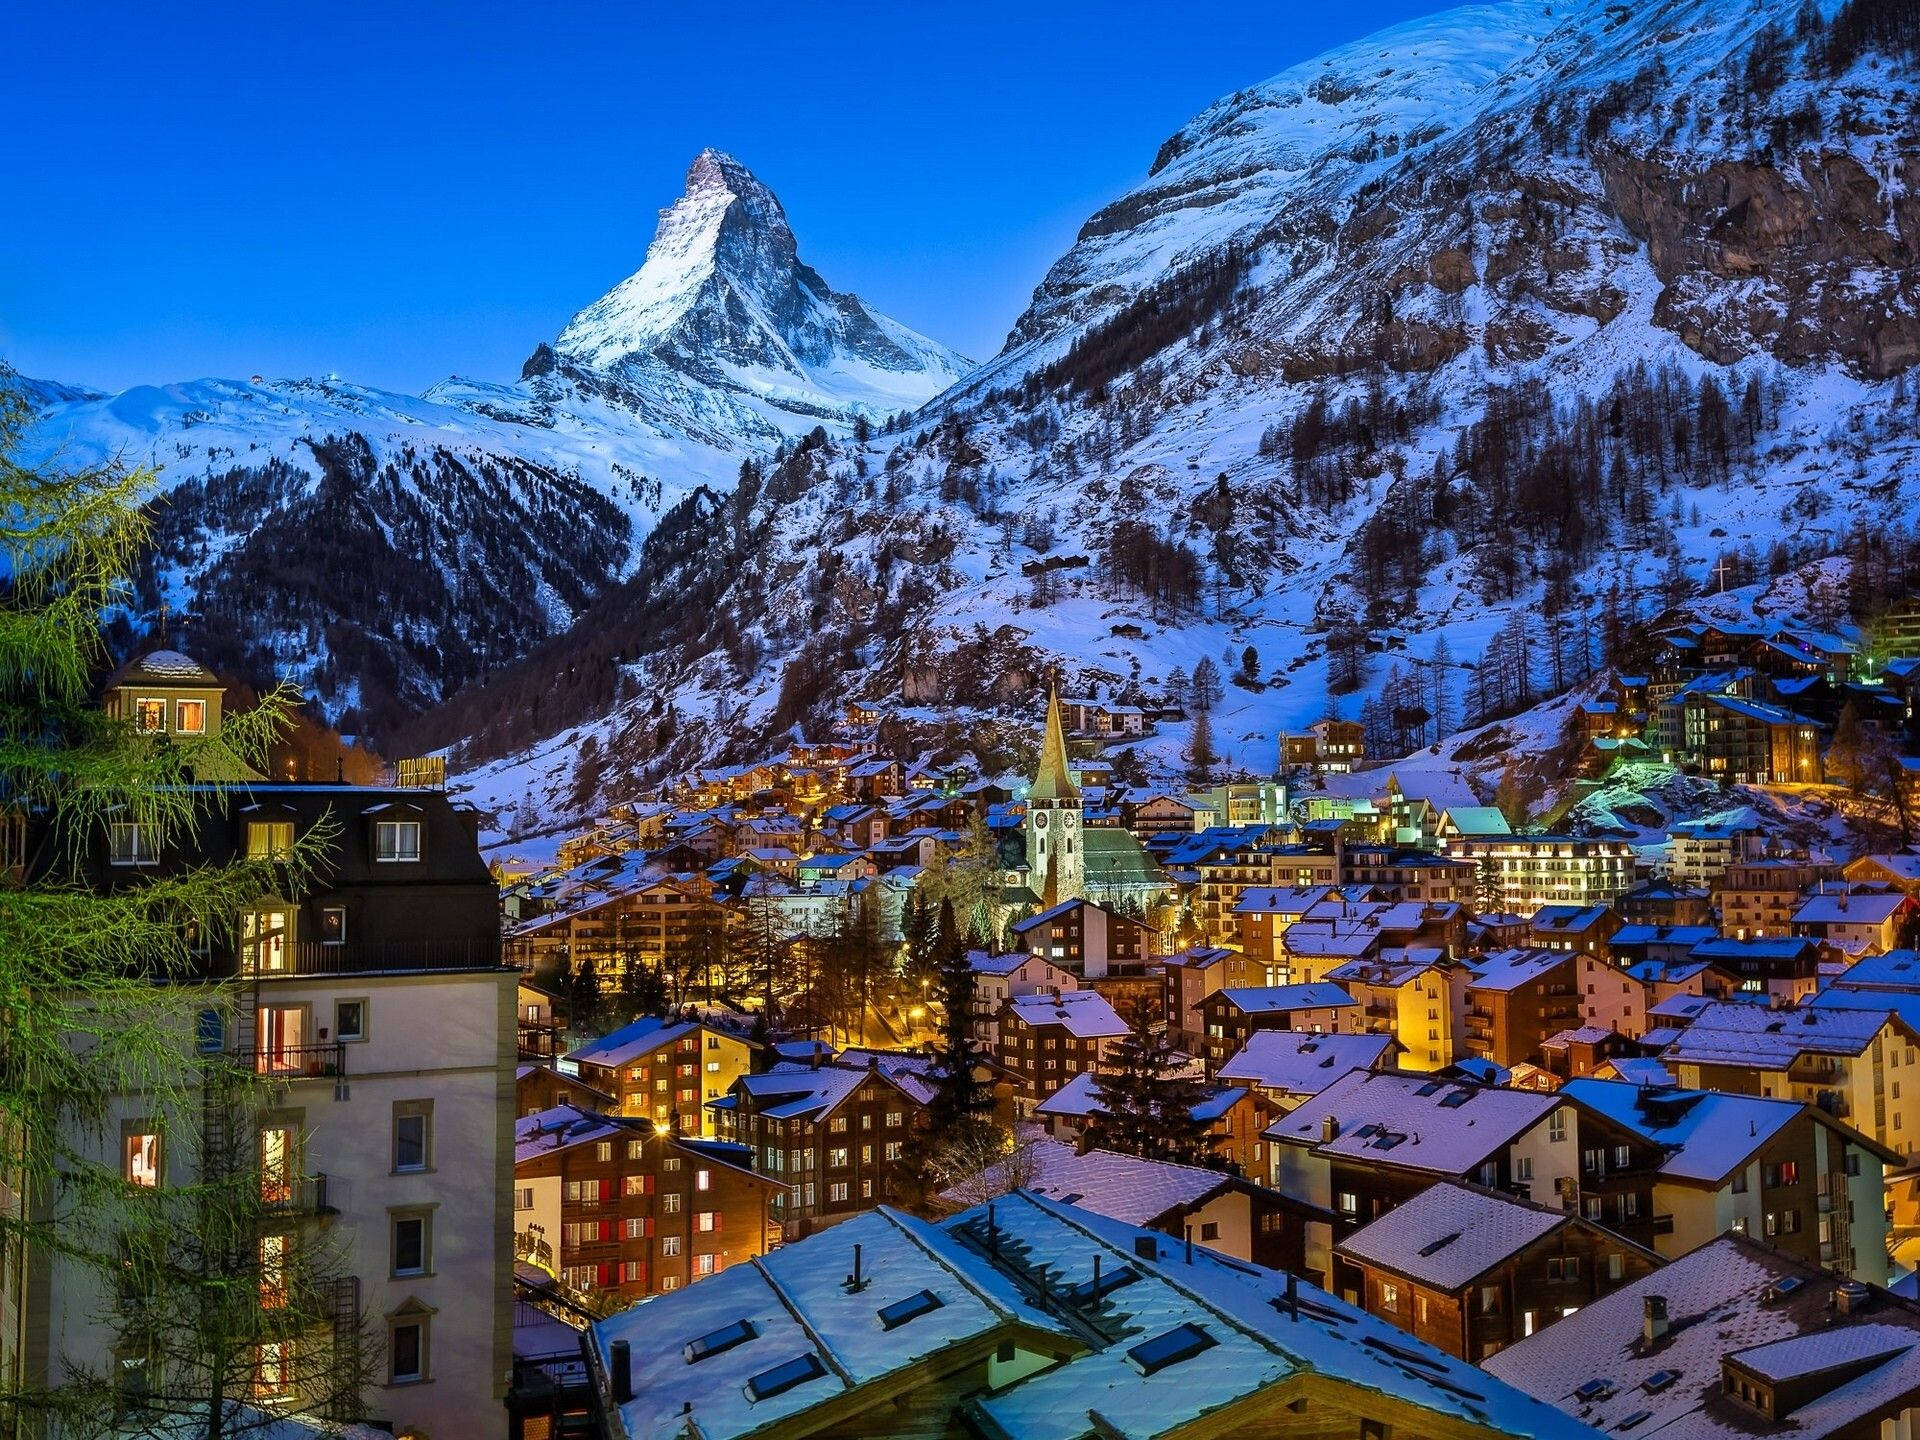 Paisajede Invierno En Los Alpes Suizos. Fondo de pantalla